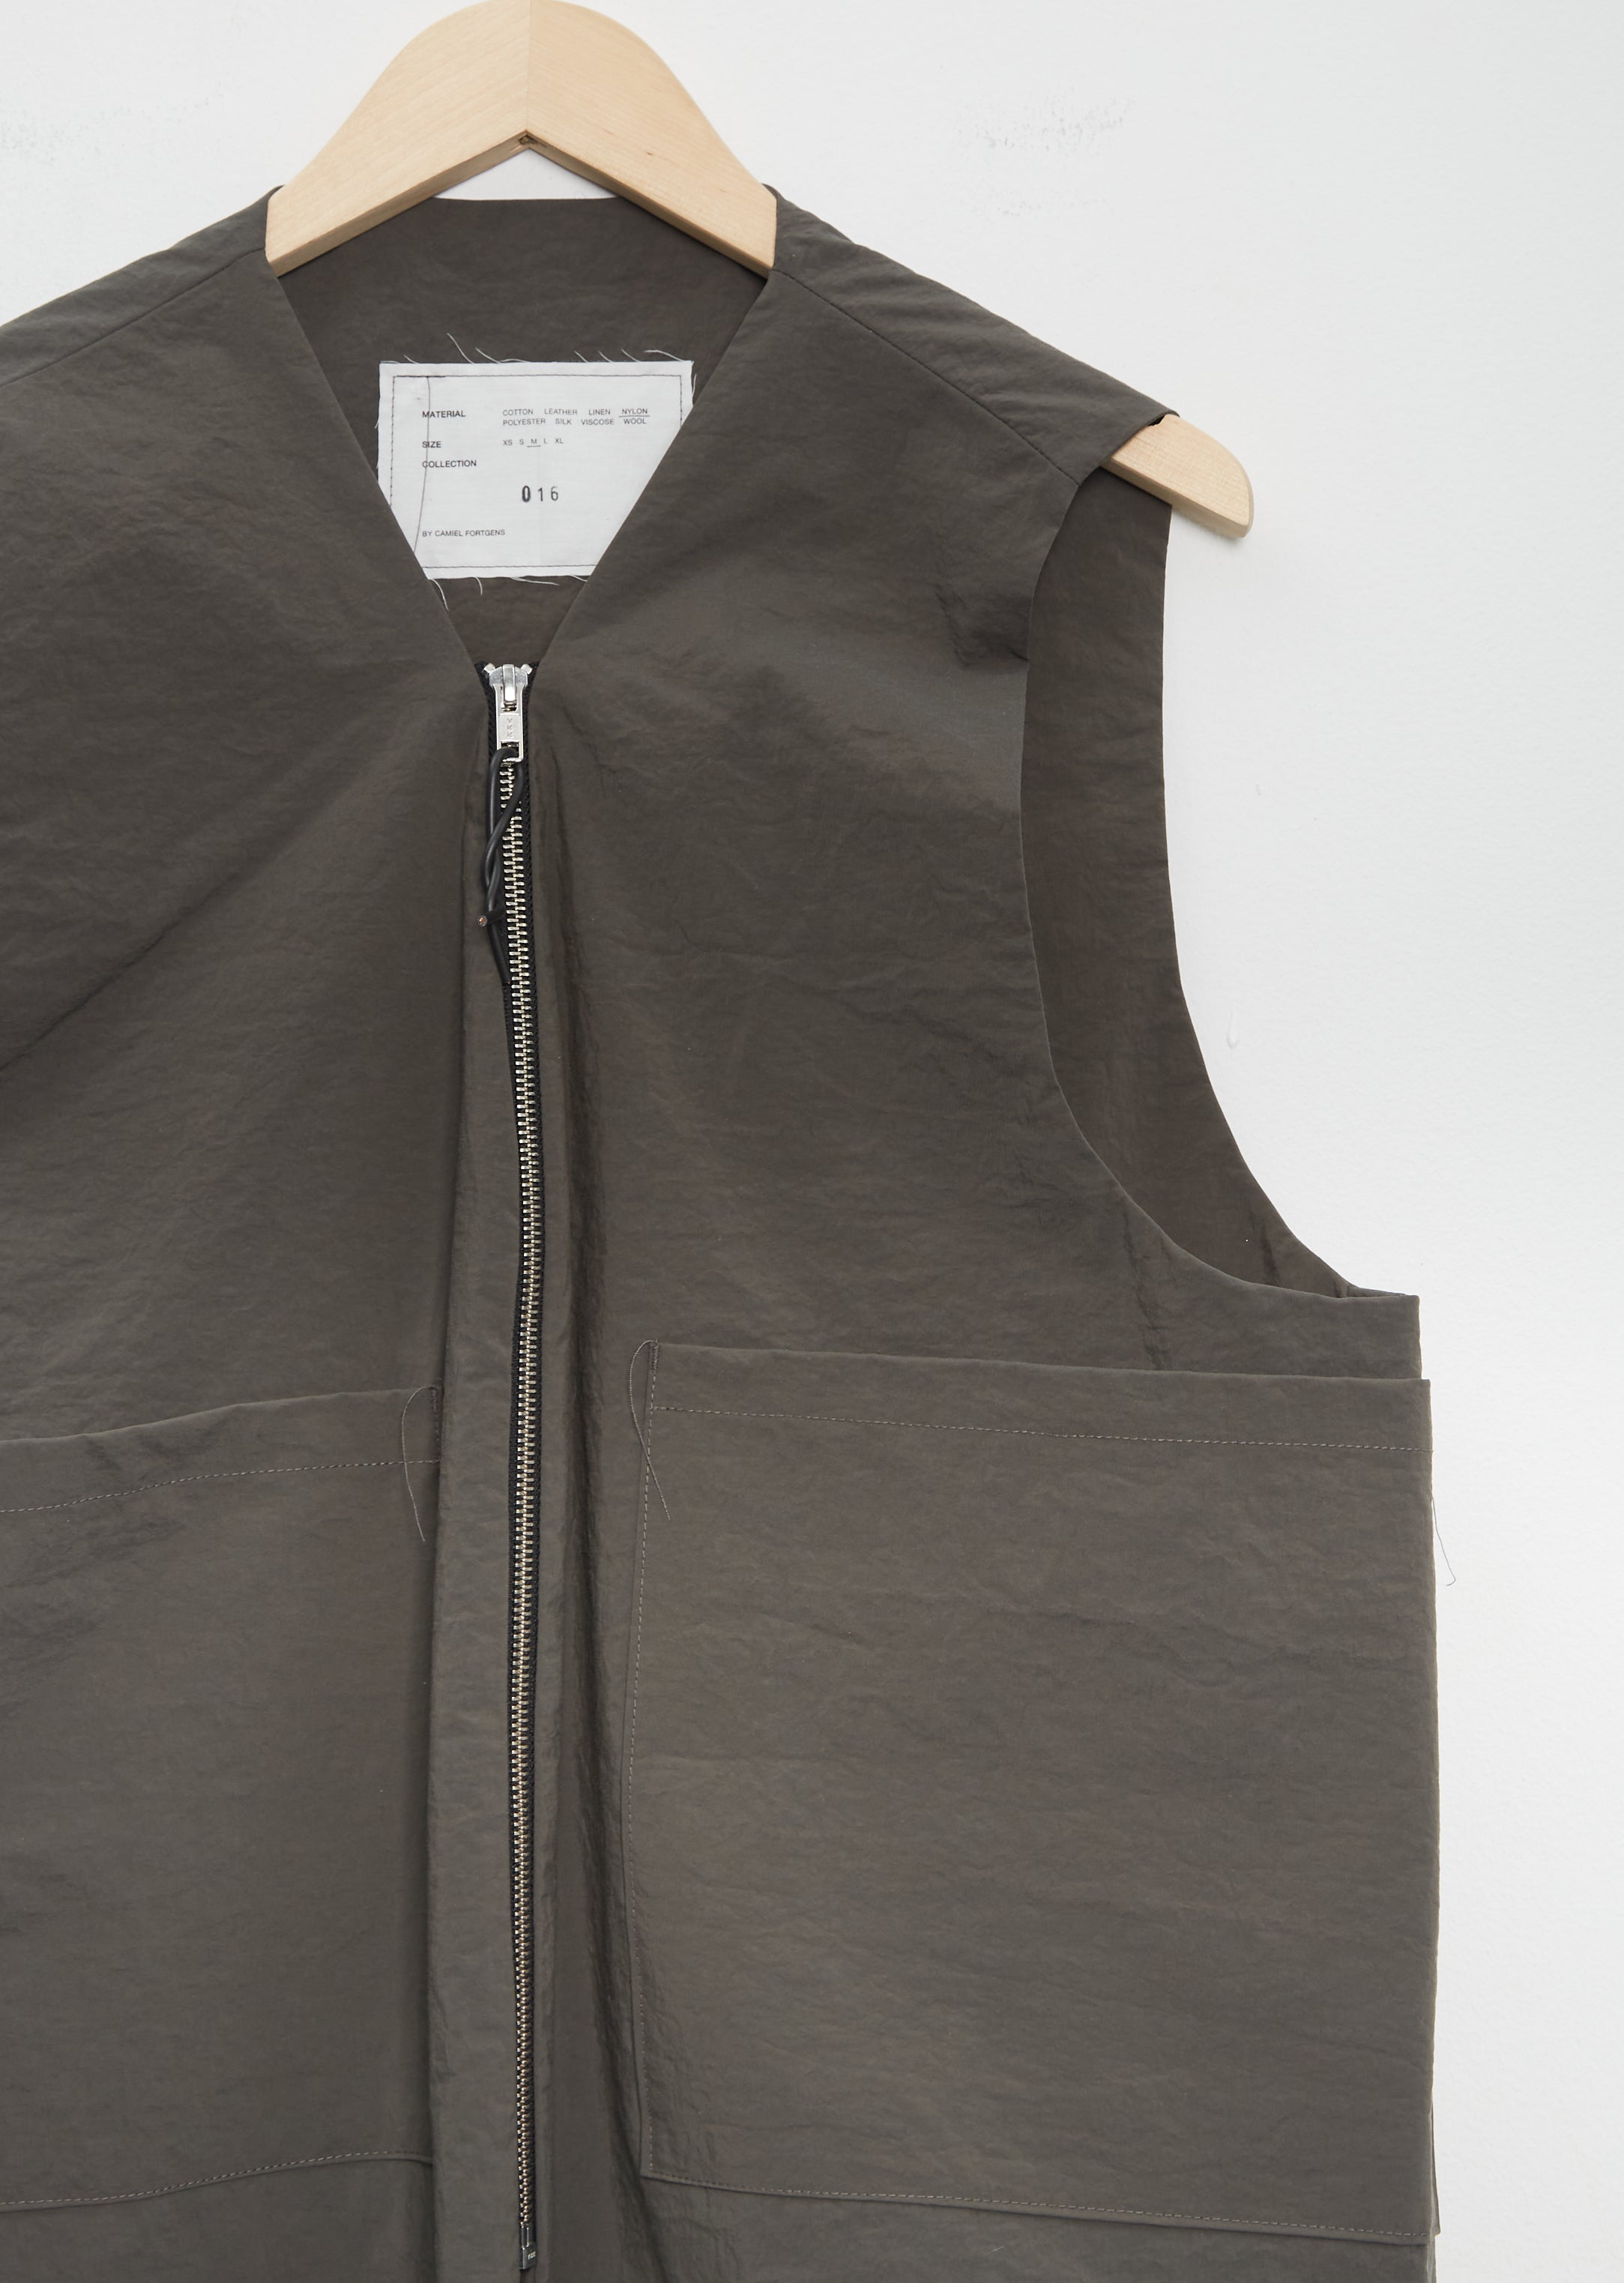 Zip Technical Vest - S / Grey